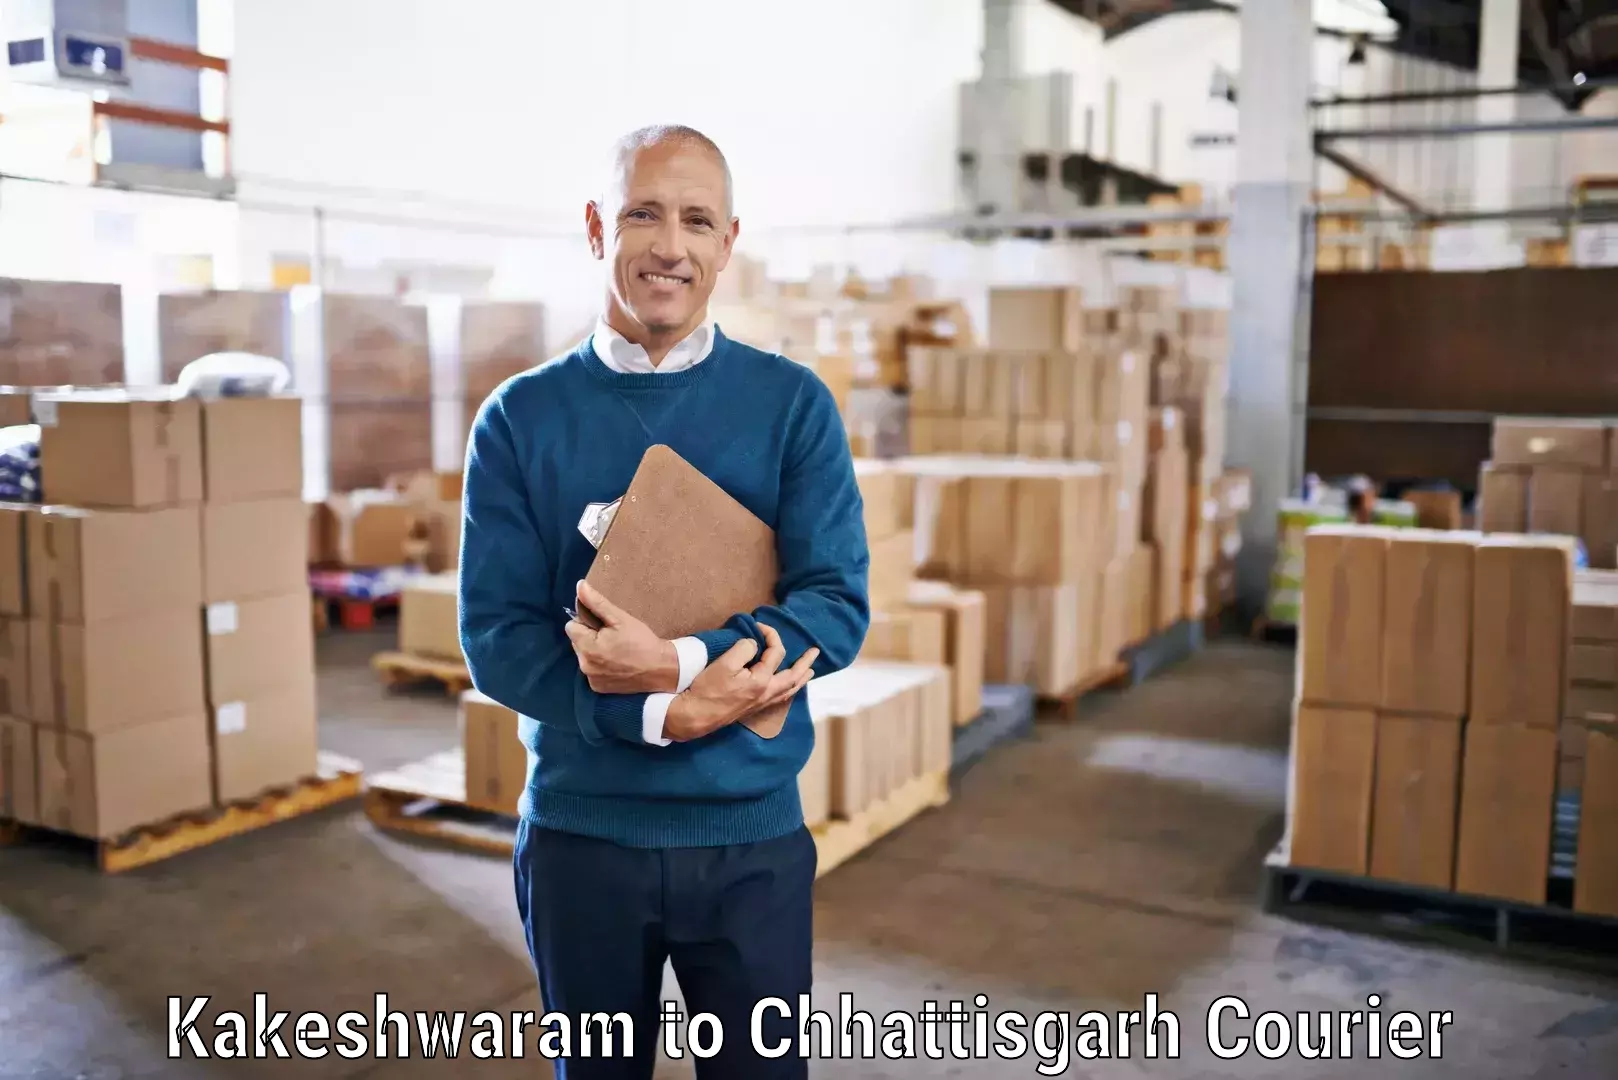 Customer-focused courier Kakeshwaram to Chirimiri